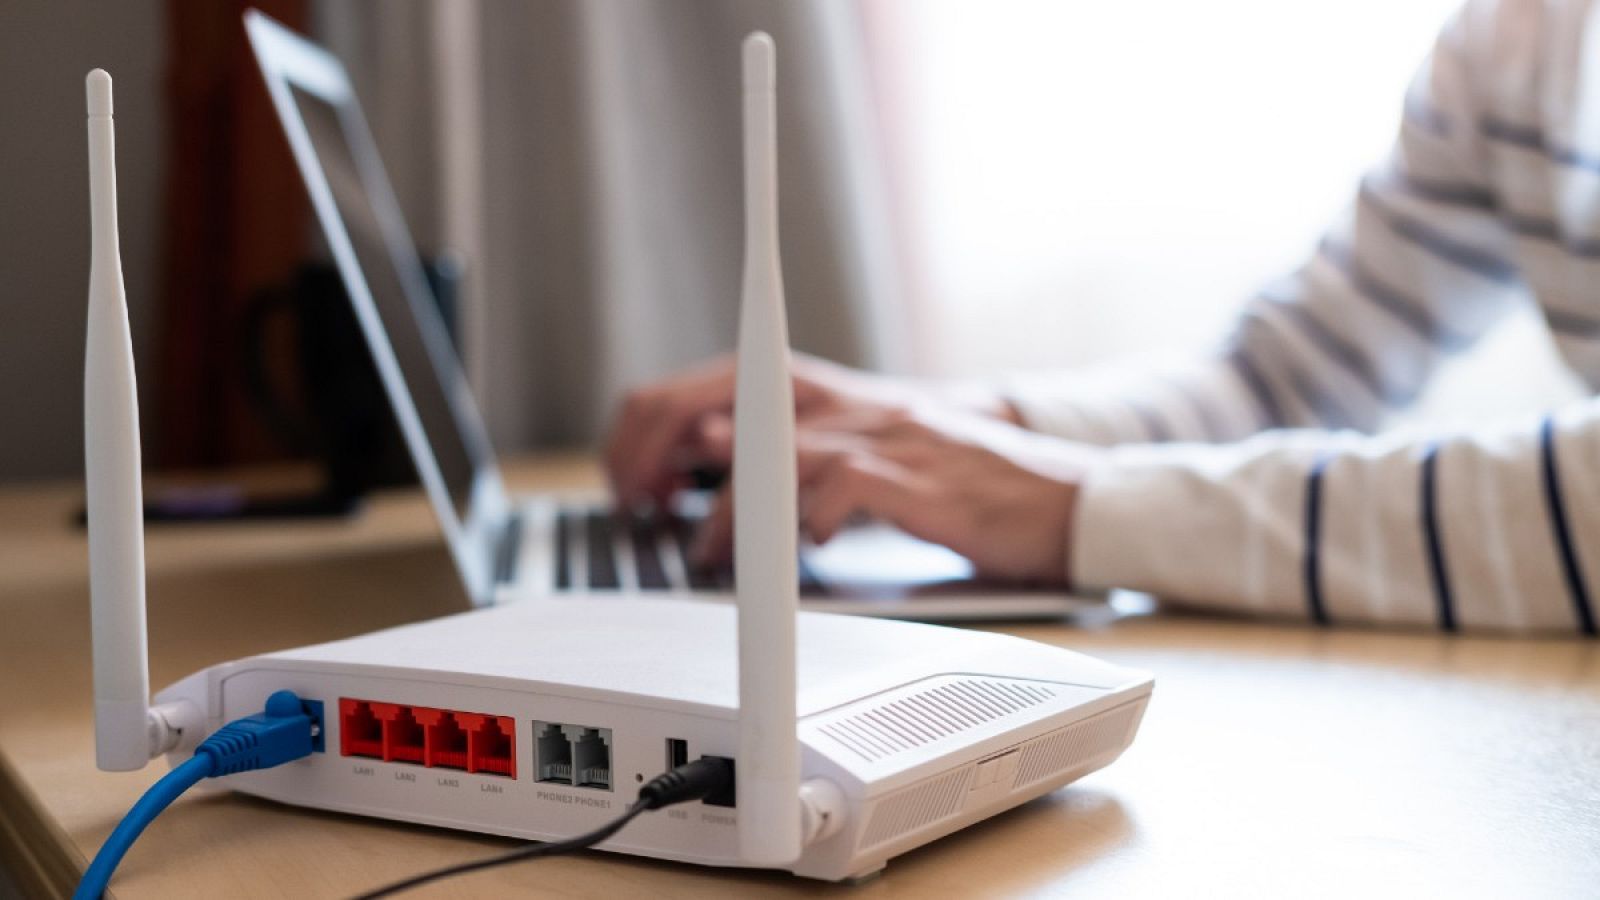 Imagen de un router blanco en primer plano mientras una persona utiliza su ordenador en el fondo